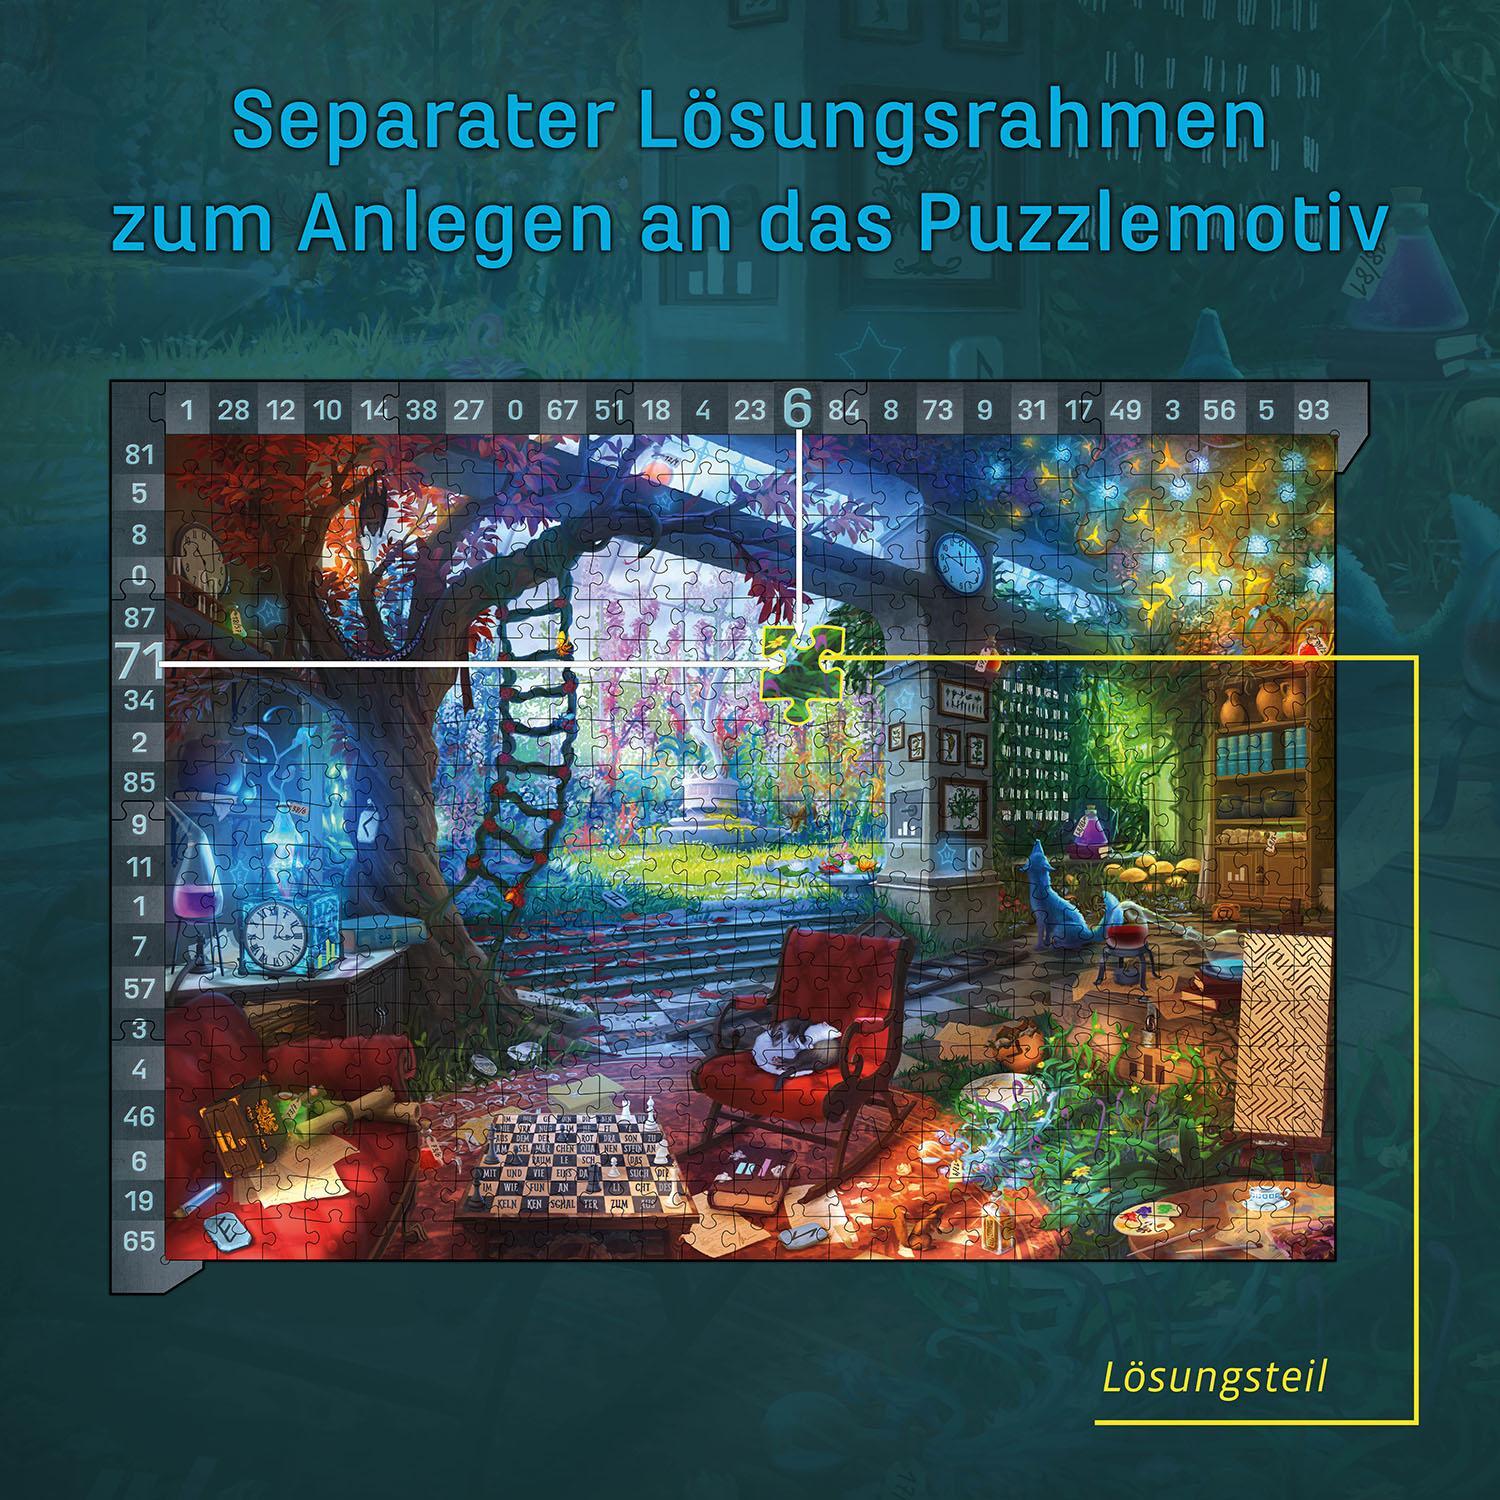 Bild: 4002051683979 | EXIT® - Das Puzzle: Das verborgene Atelier | Spiel | Brand (u. a.)